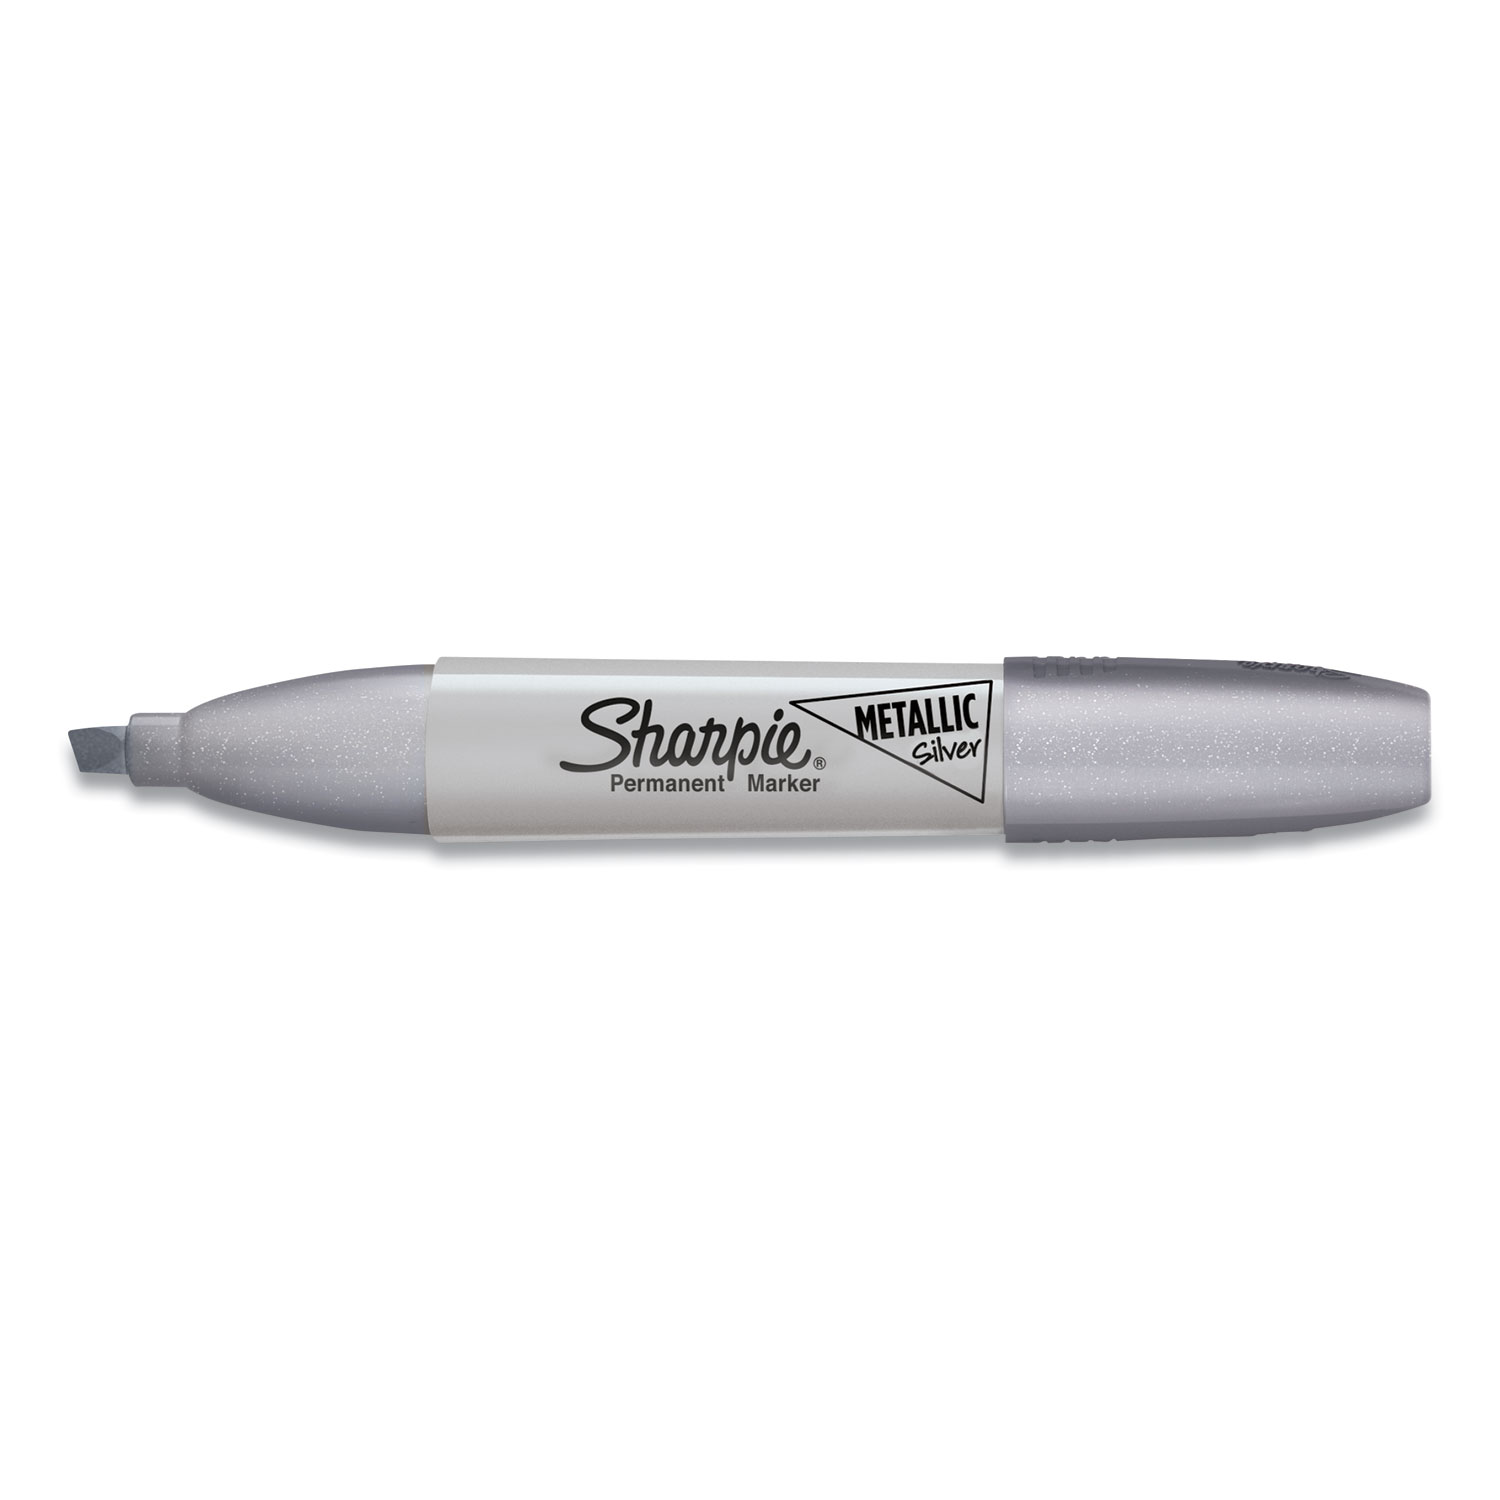  Sharpie 2089638 Metallic Permanent Marker, Medium Chisel Tip, Silver, Dozen (SAN2089638) 